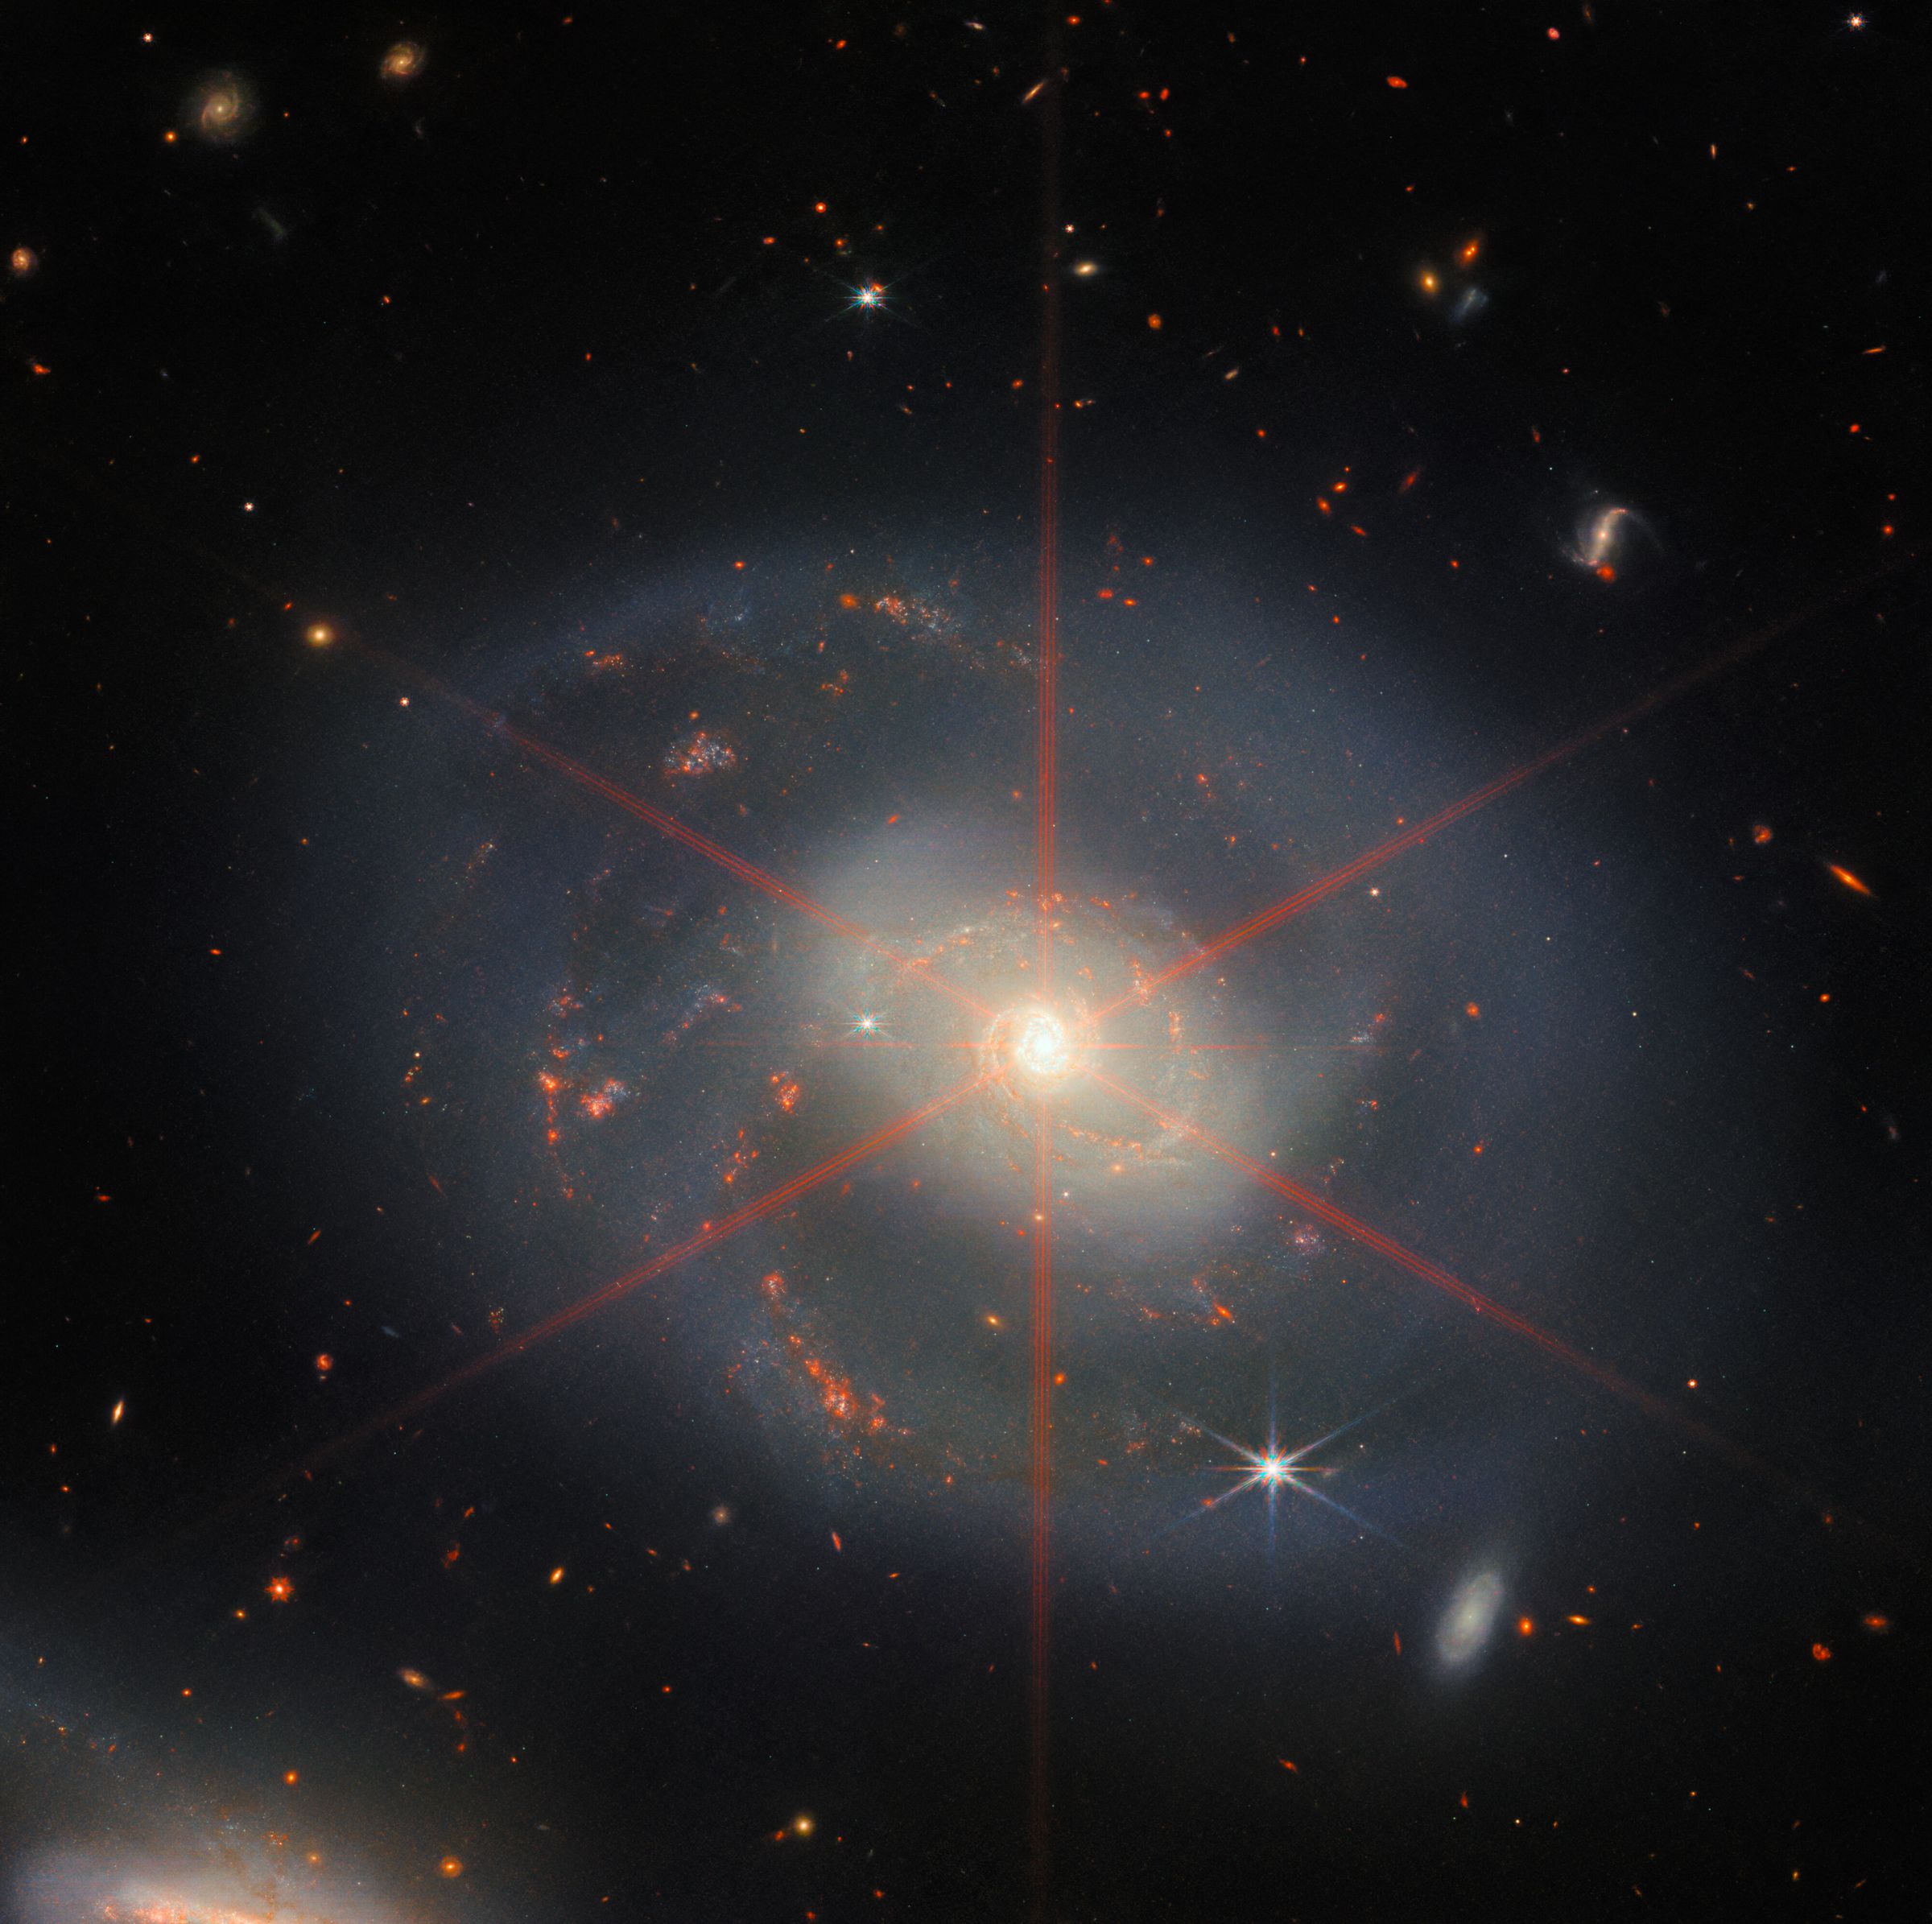 Esta imagem mostra uma galáxia espiral dominada por uma região central brilhante.  A galáxia tem tons azul-púrpura com regiões vermelho-alaranjadas cheias de estrelas.  Um grande pico de difração também pode ser visto, que aparece como um padrão estelar sobre a região central da galáxia.  Muitas estrelas e galáxias preenchem o cenário de fundo